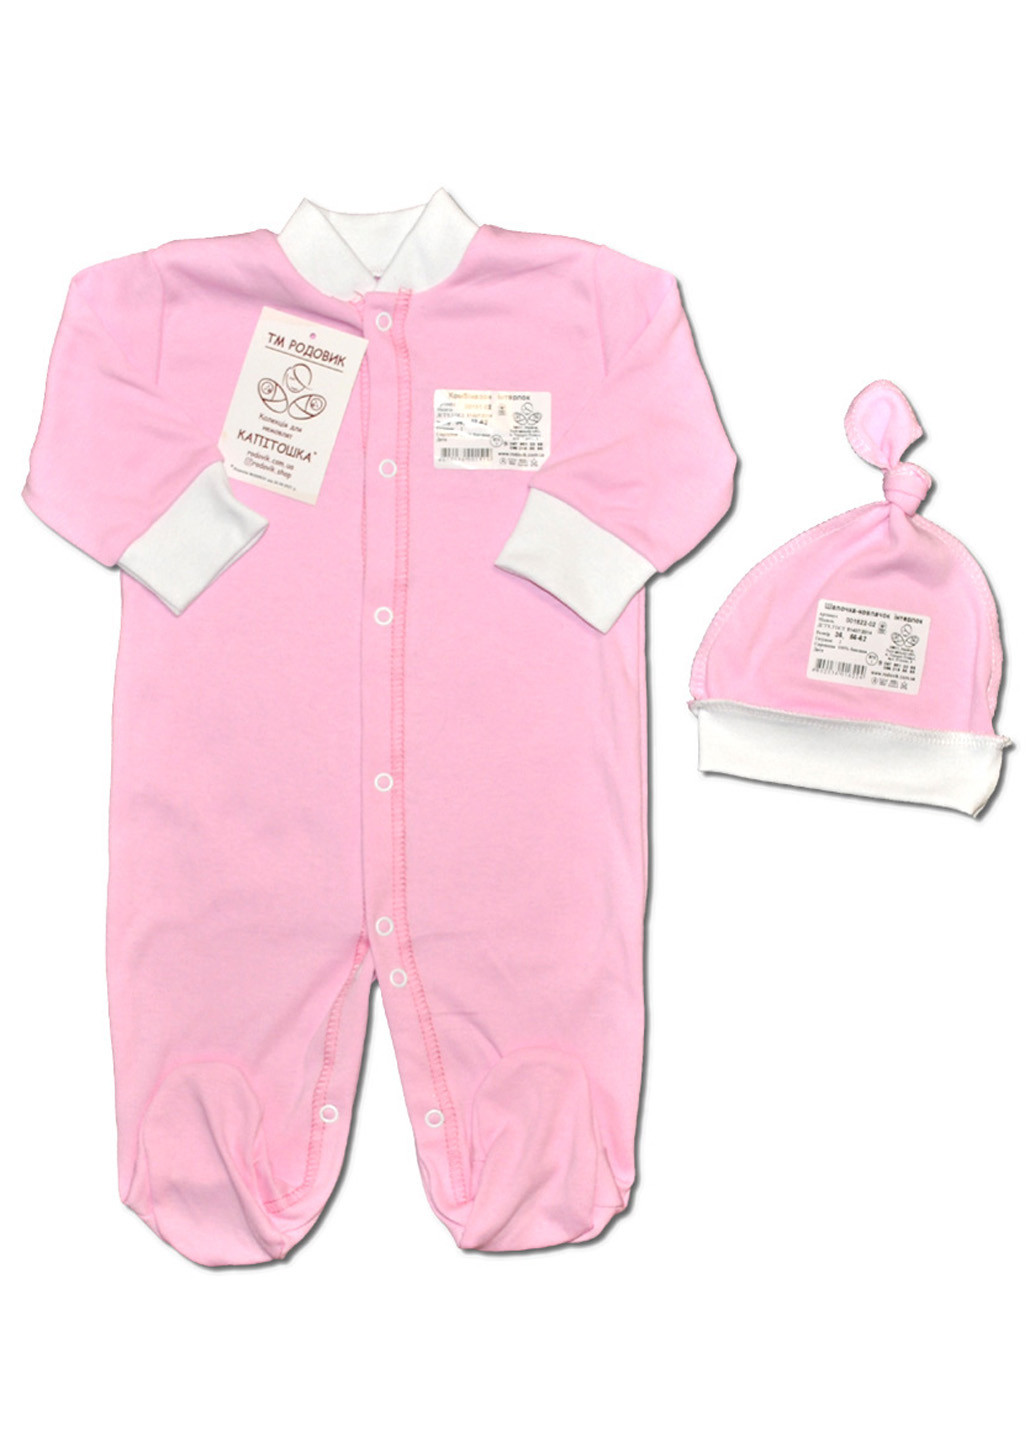 Рожевий демісезонний комплект одягу для малюка чоловічок + чепчик ковпак №3 тм колекція капітошка Родовик комплект ЧШР